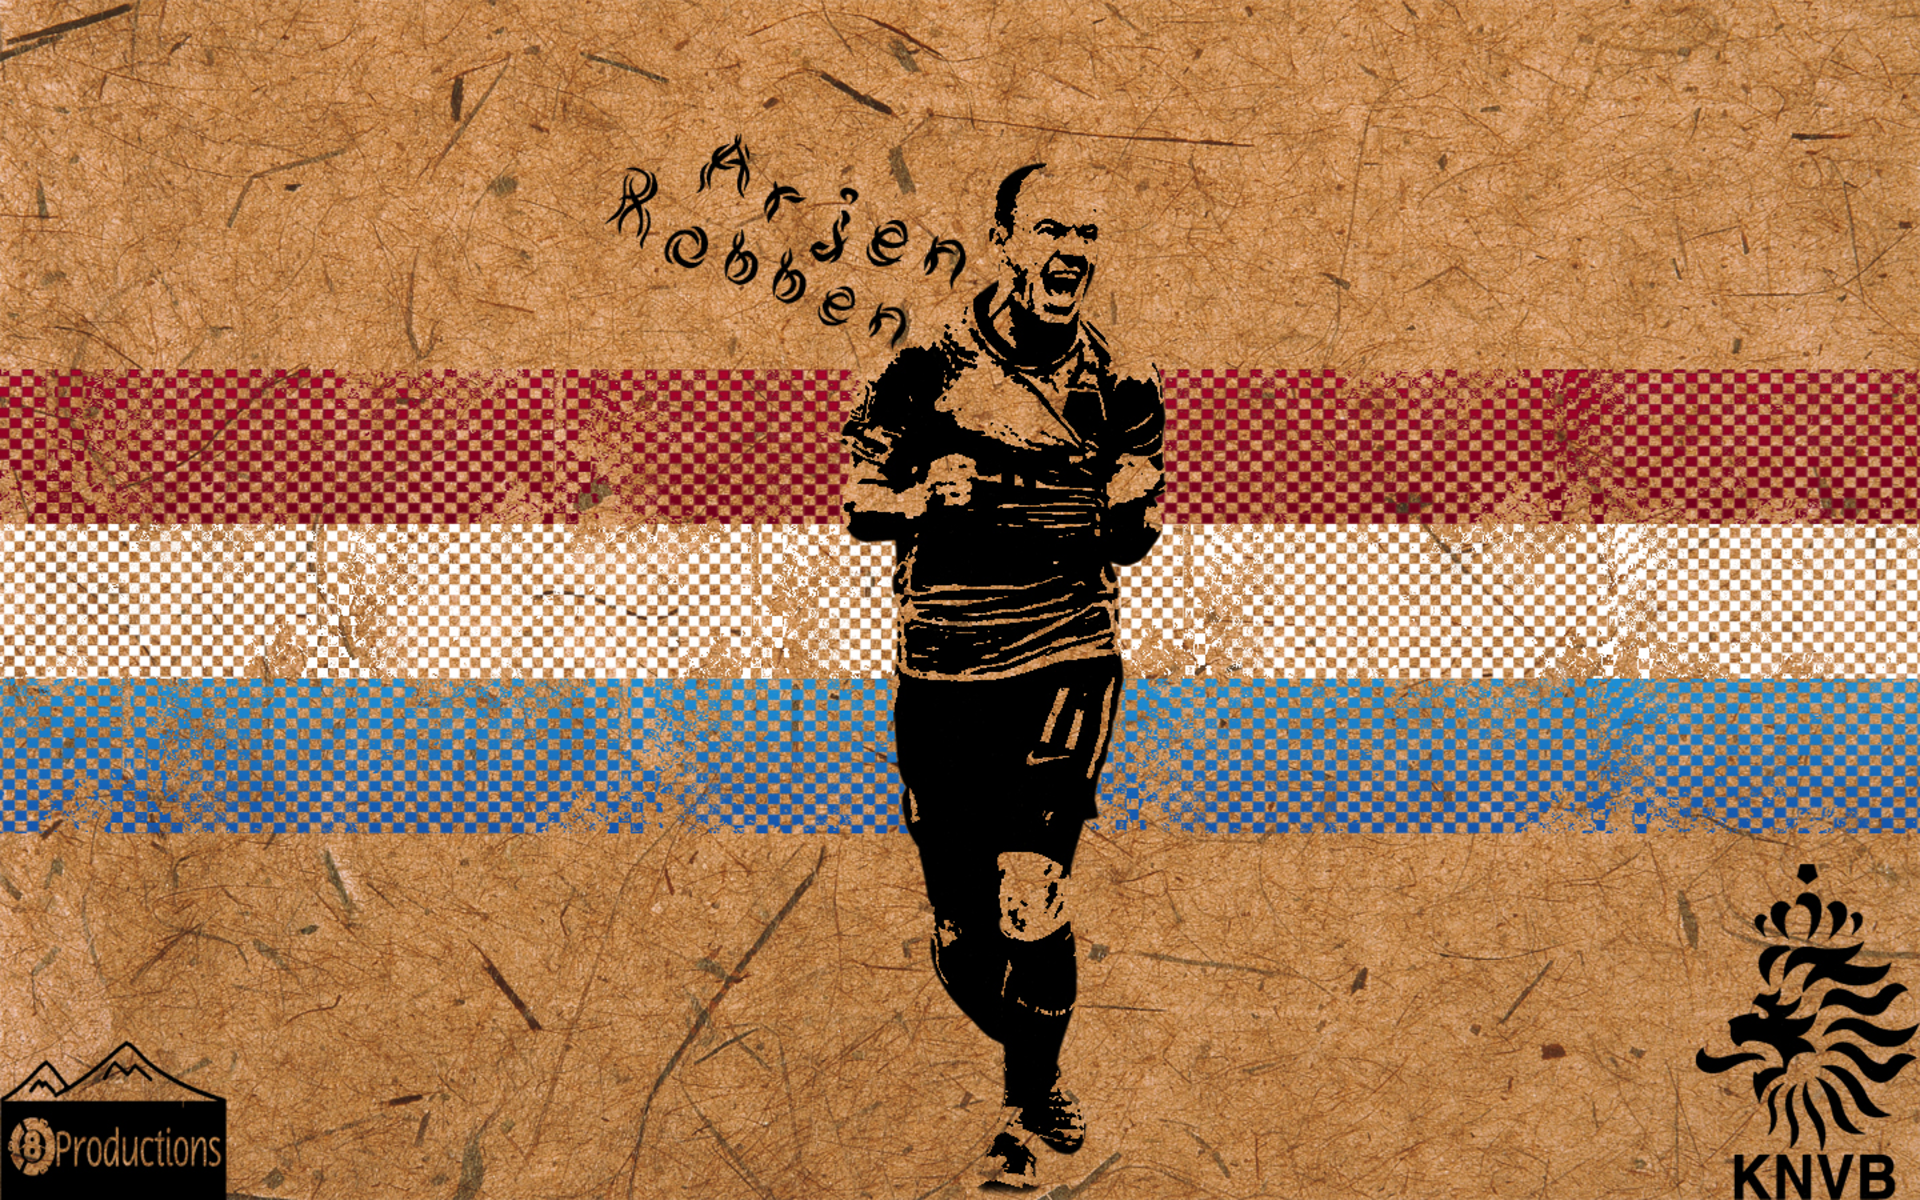 Sports Arjen Robben HD Wallpaper | Background Image